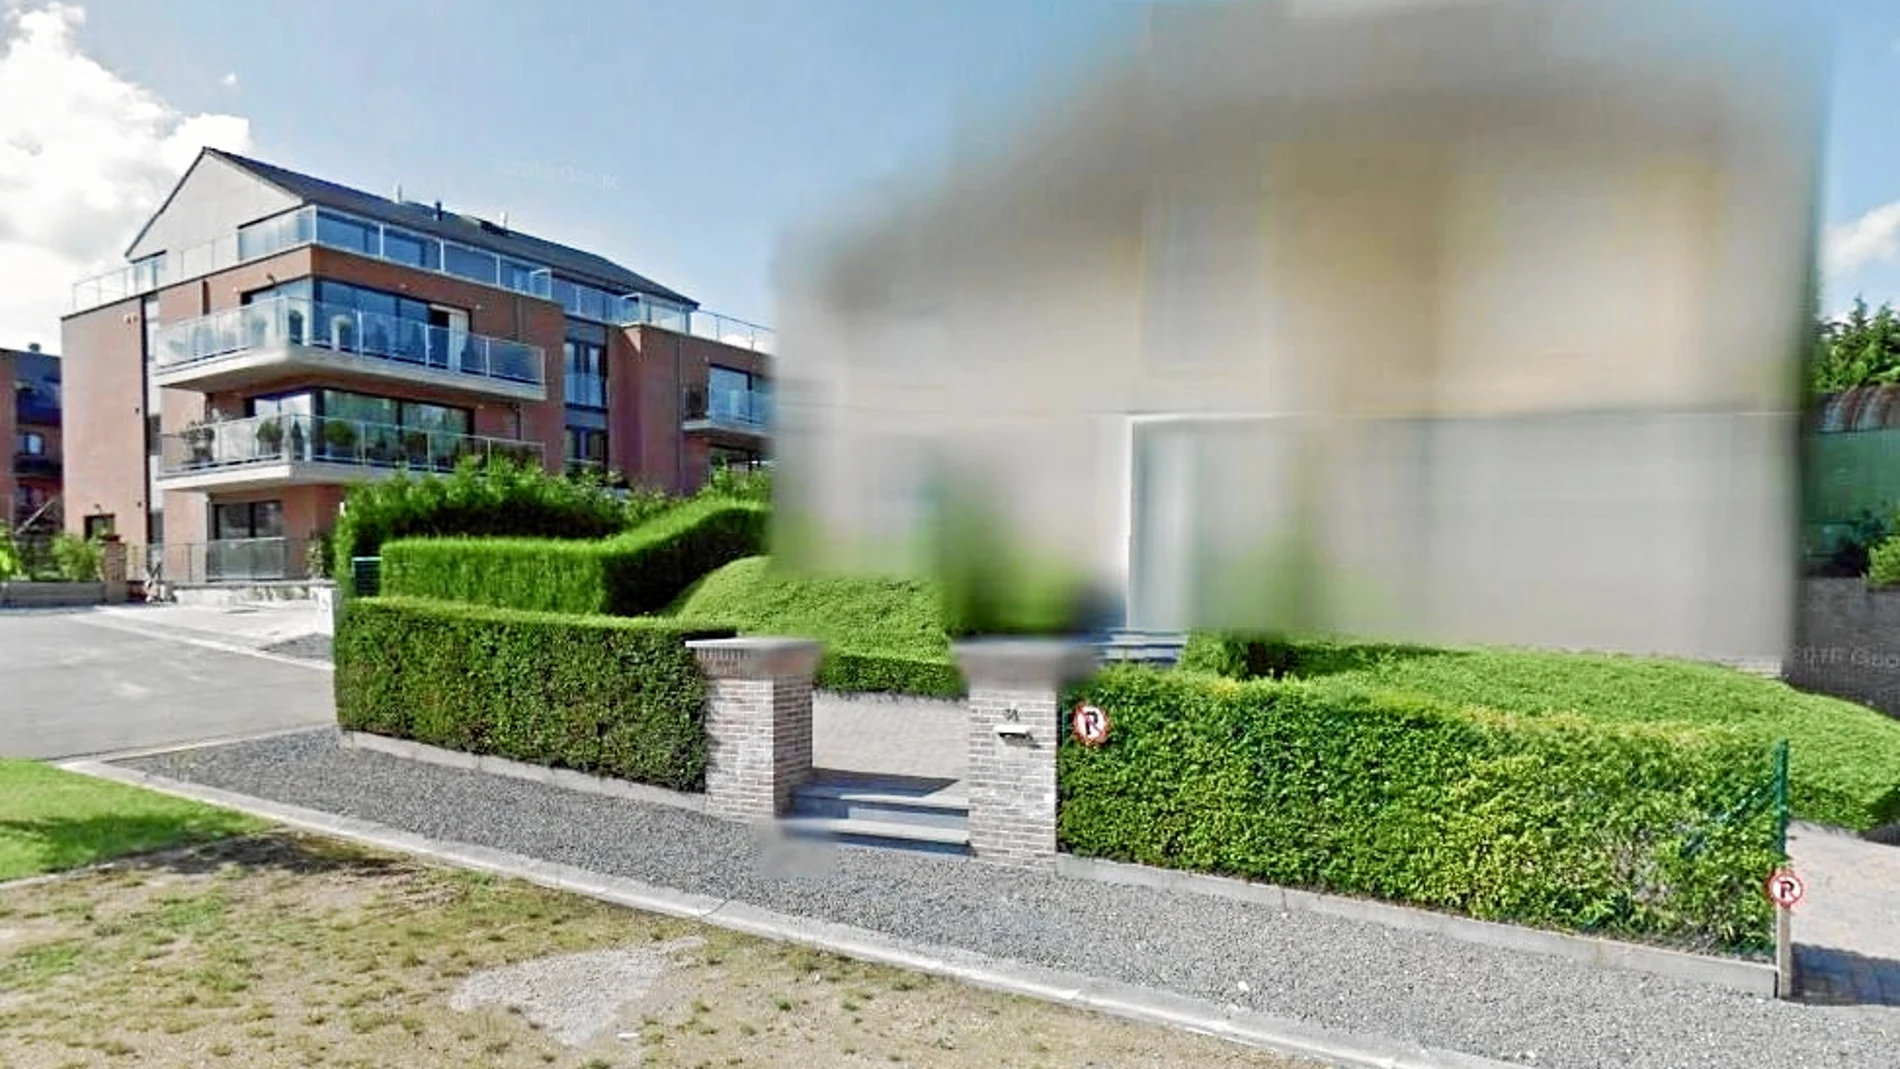 Google ha accedido a la petición de Puigdemont de pixelar, por motivos de seguridad, la mansión de Waterloo en la que reside